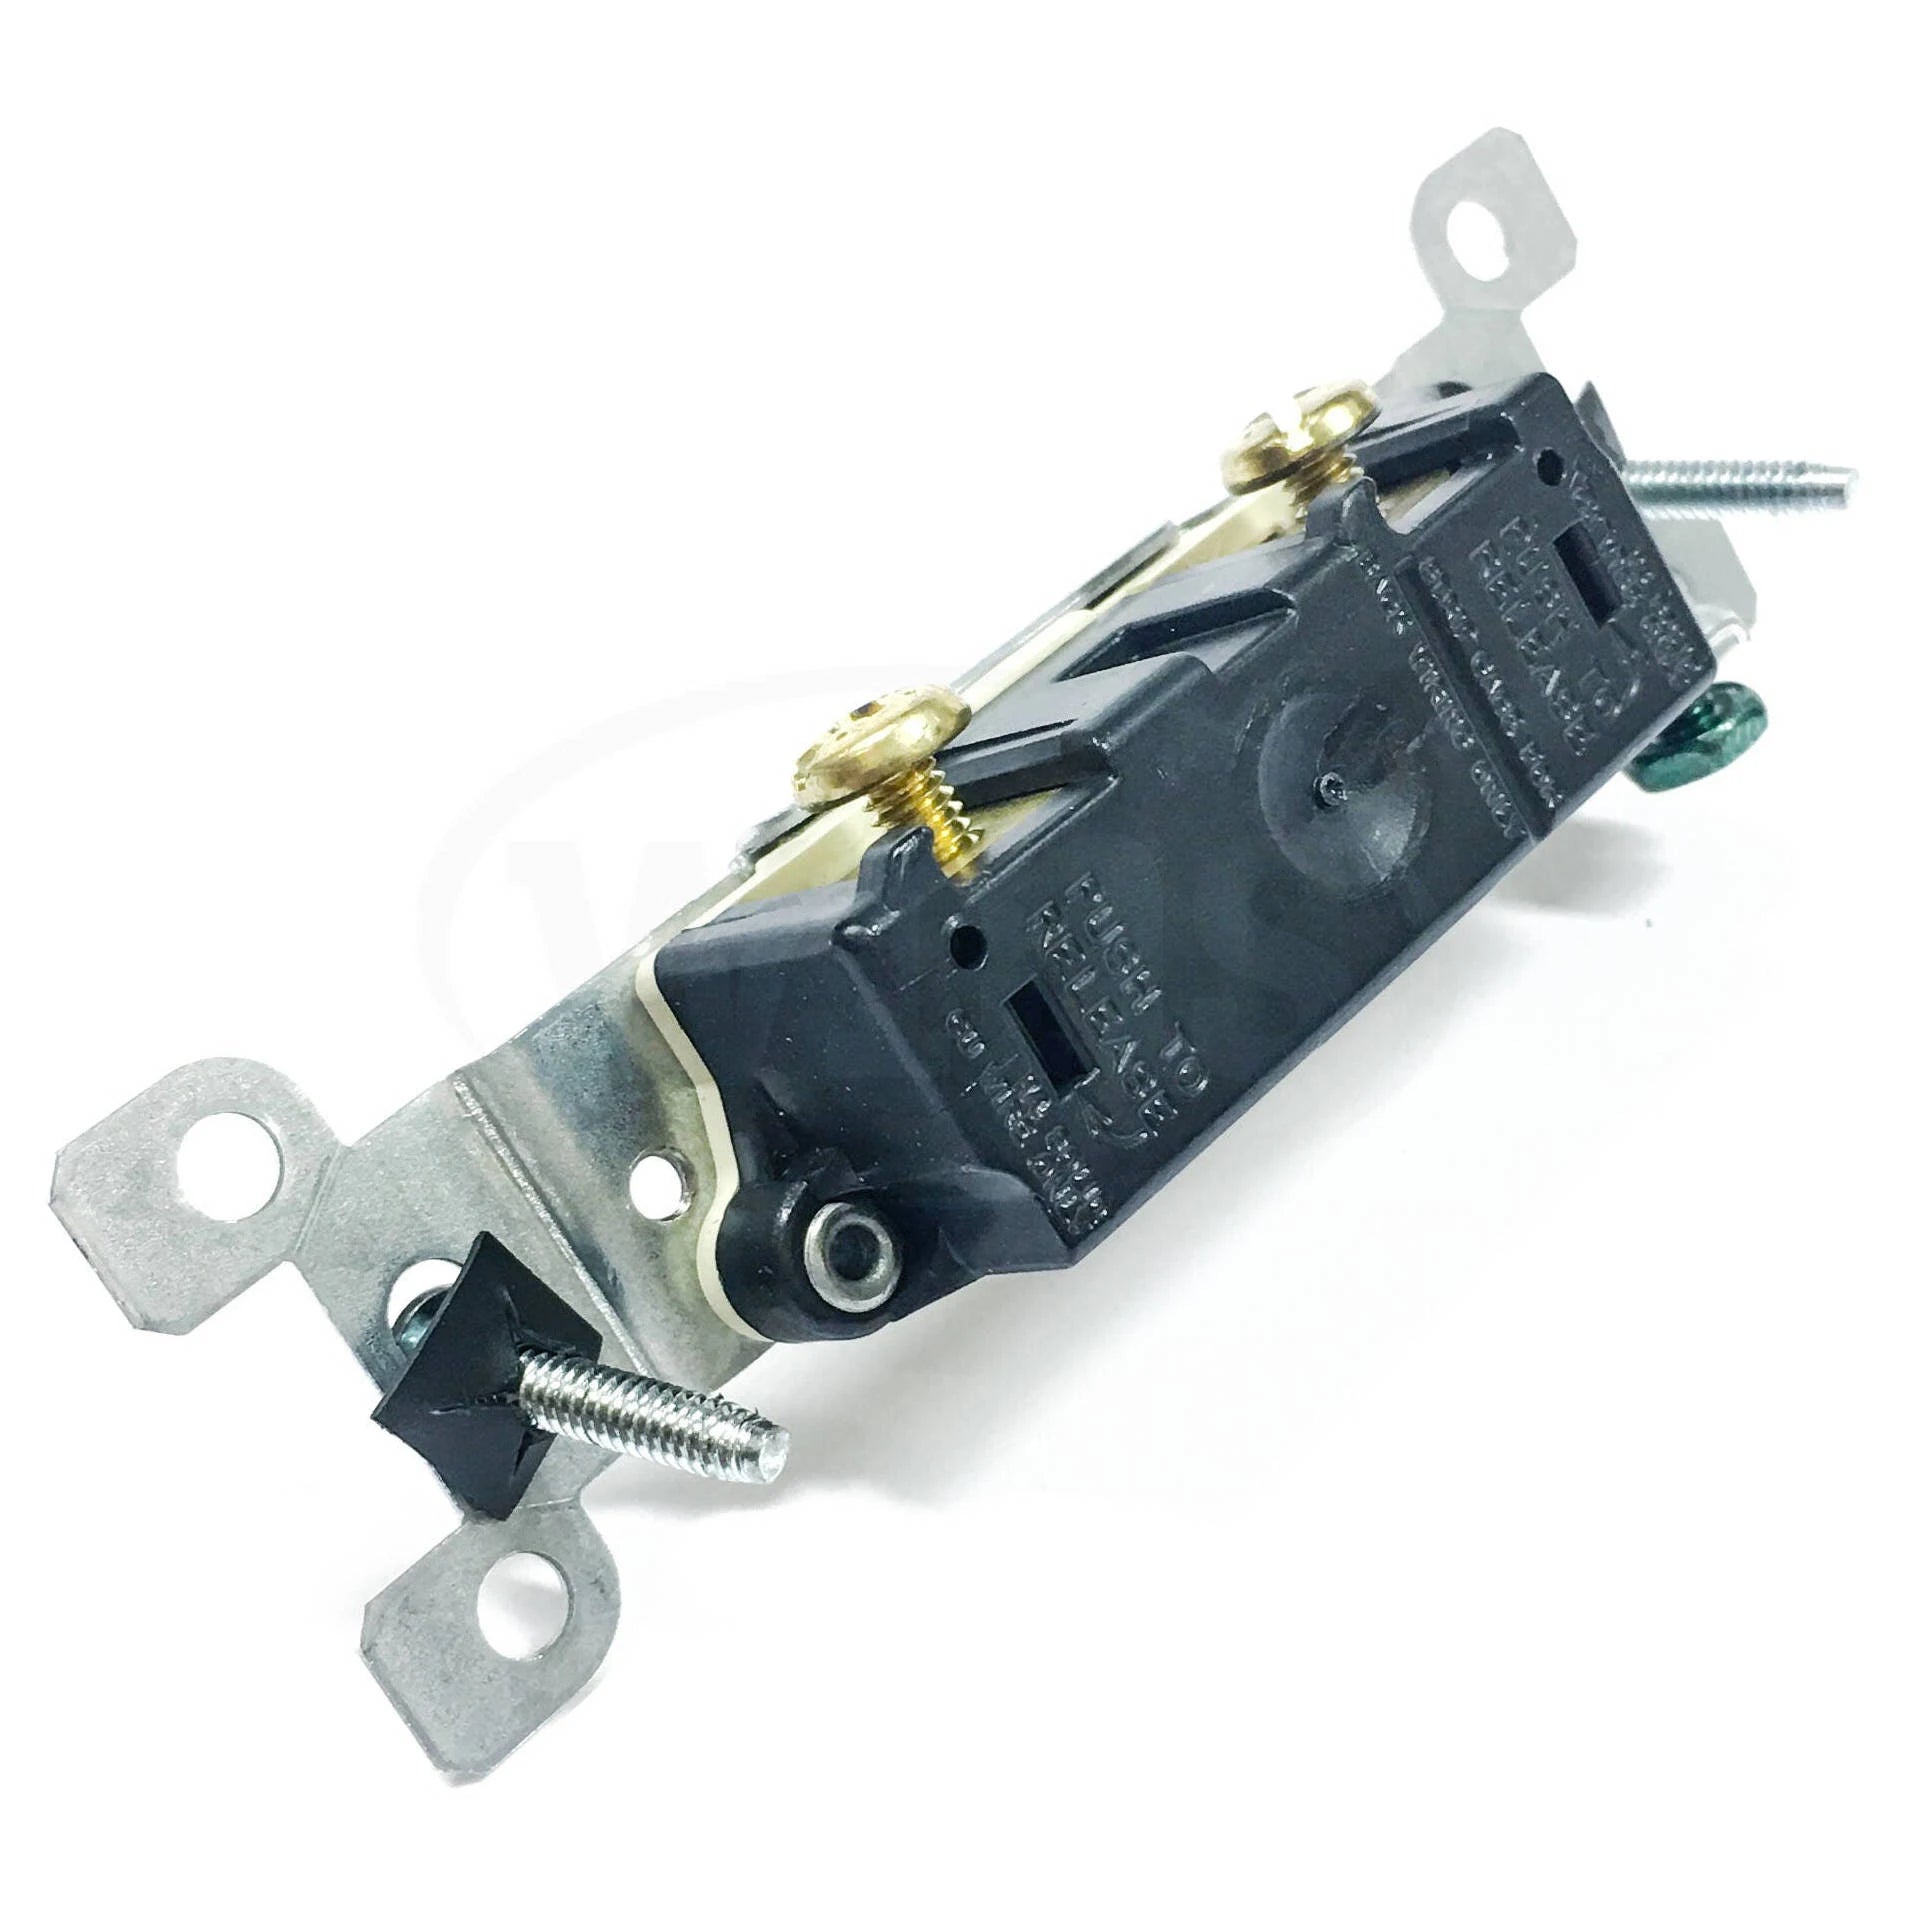 Leviton 1451-2I 15 Amp Single-Pole Toggle Switch, Grounding, Ivory- 10 Pack